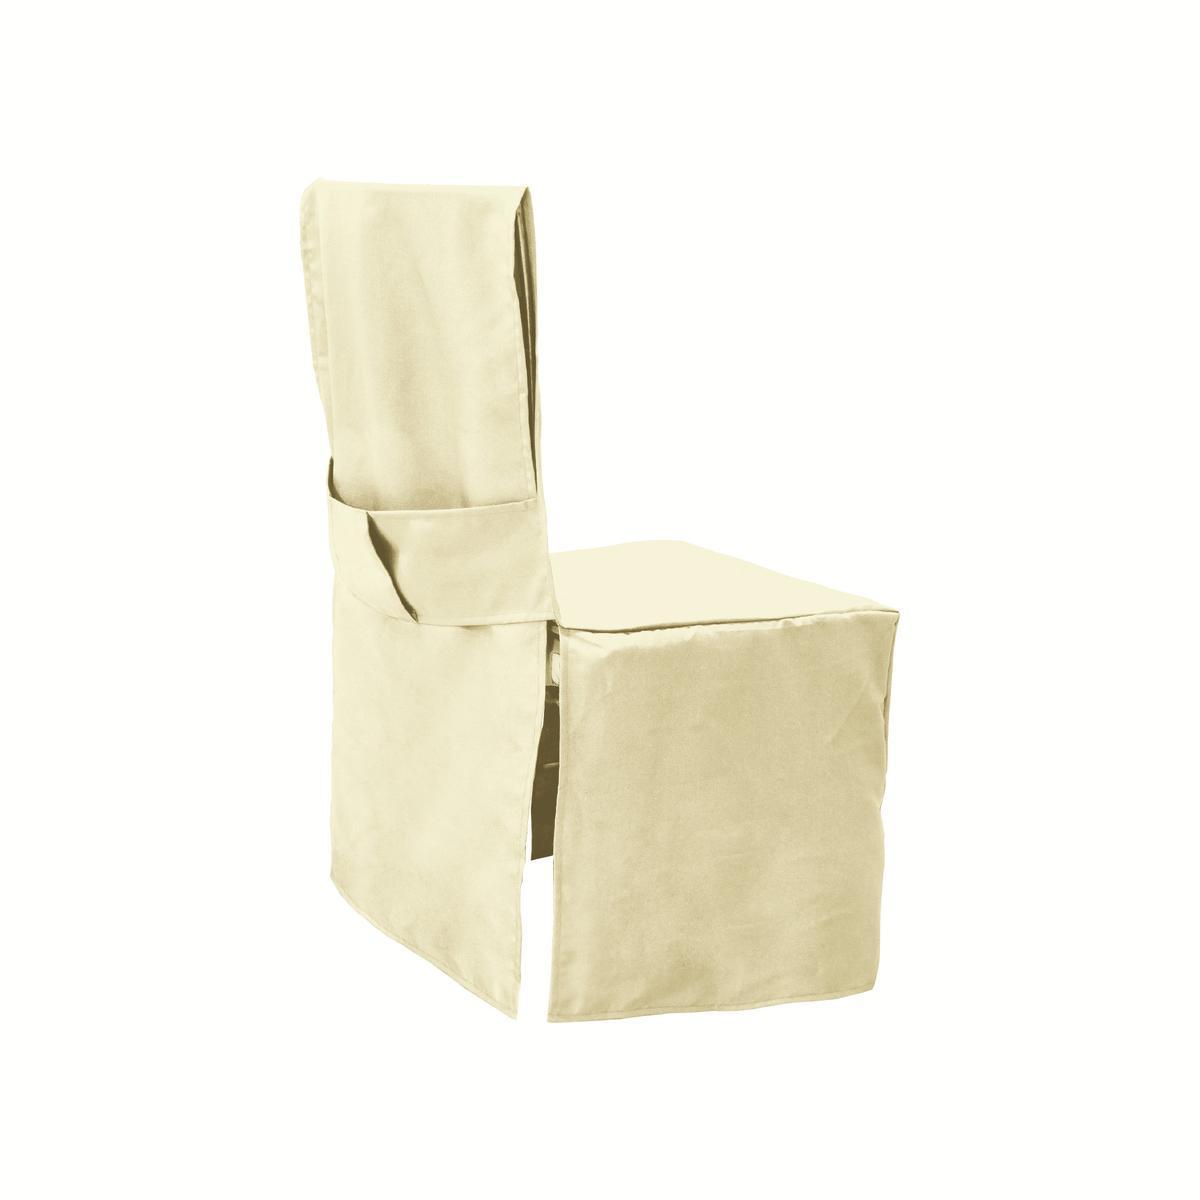 Housse de chaise dos droit - Polyester - 45 x 45 x H 100 cm - Beige, taupe